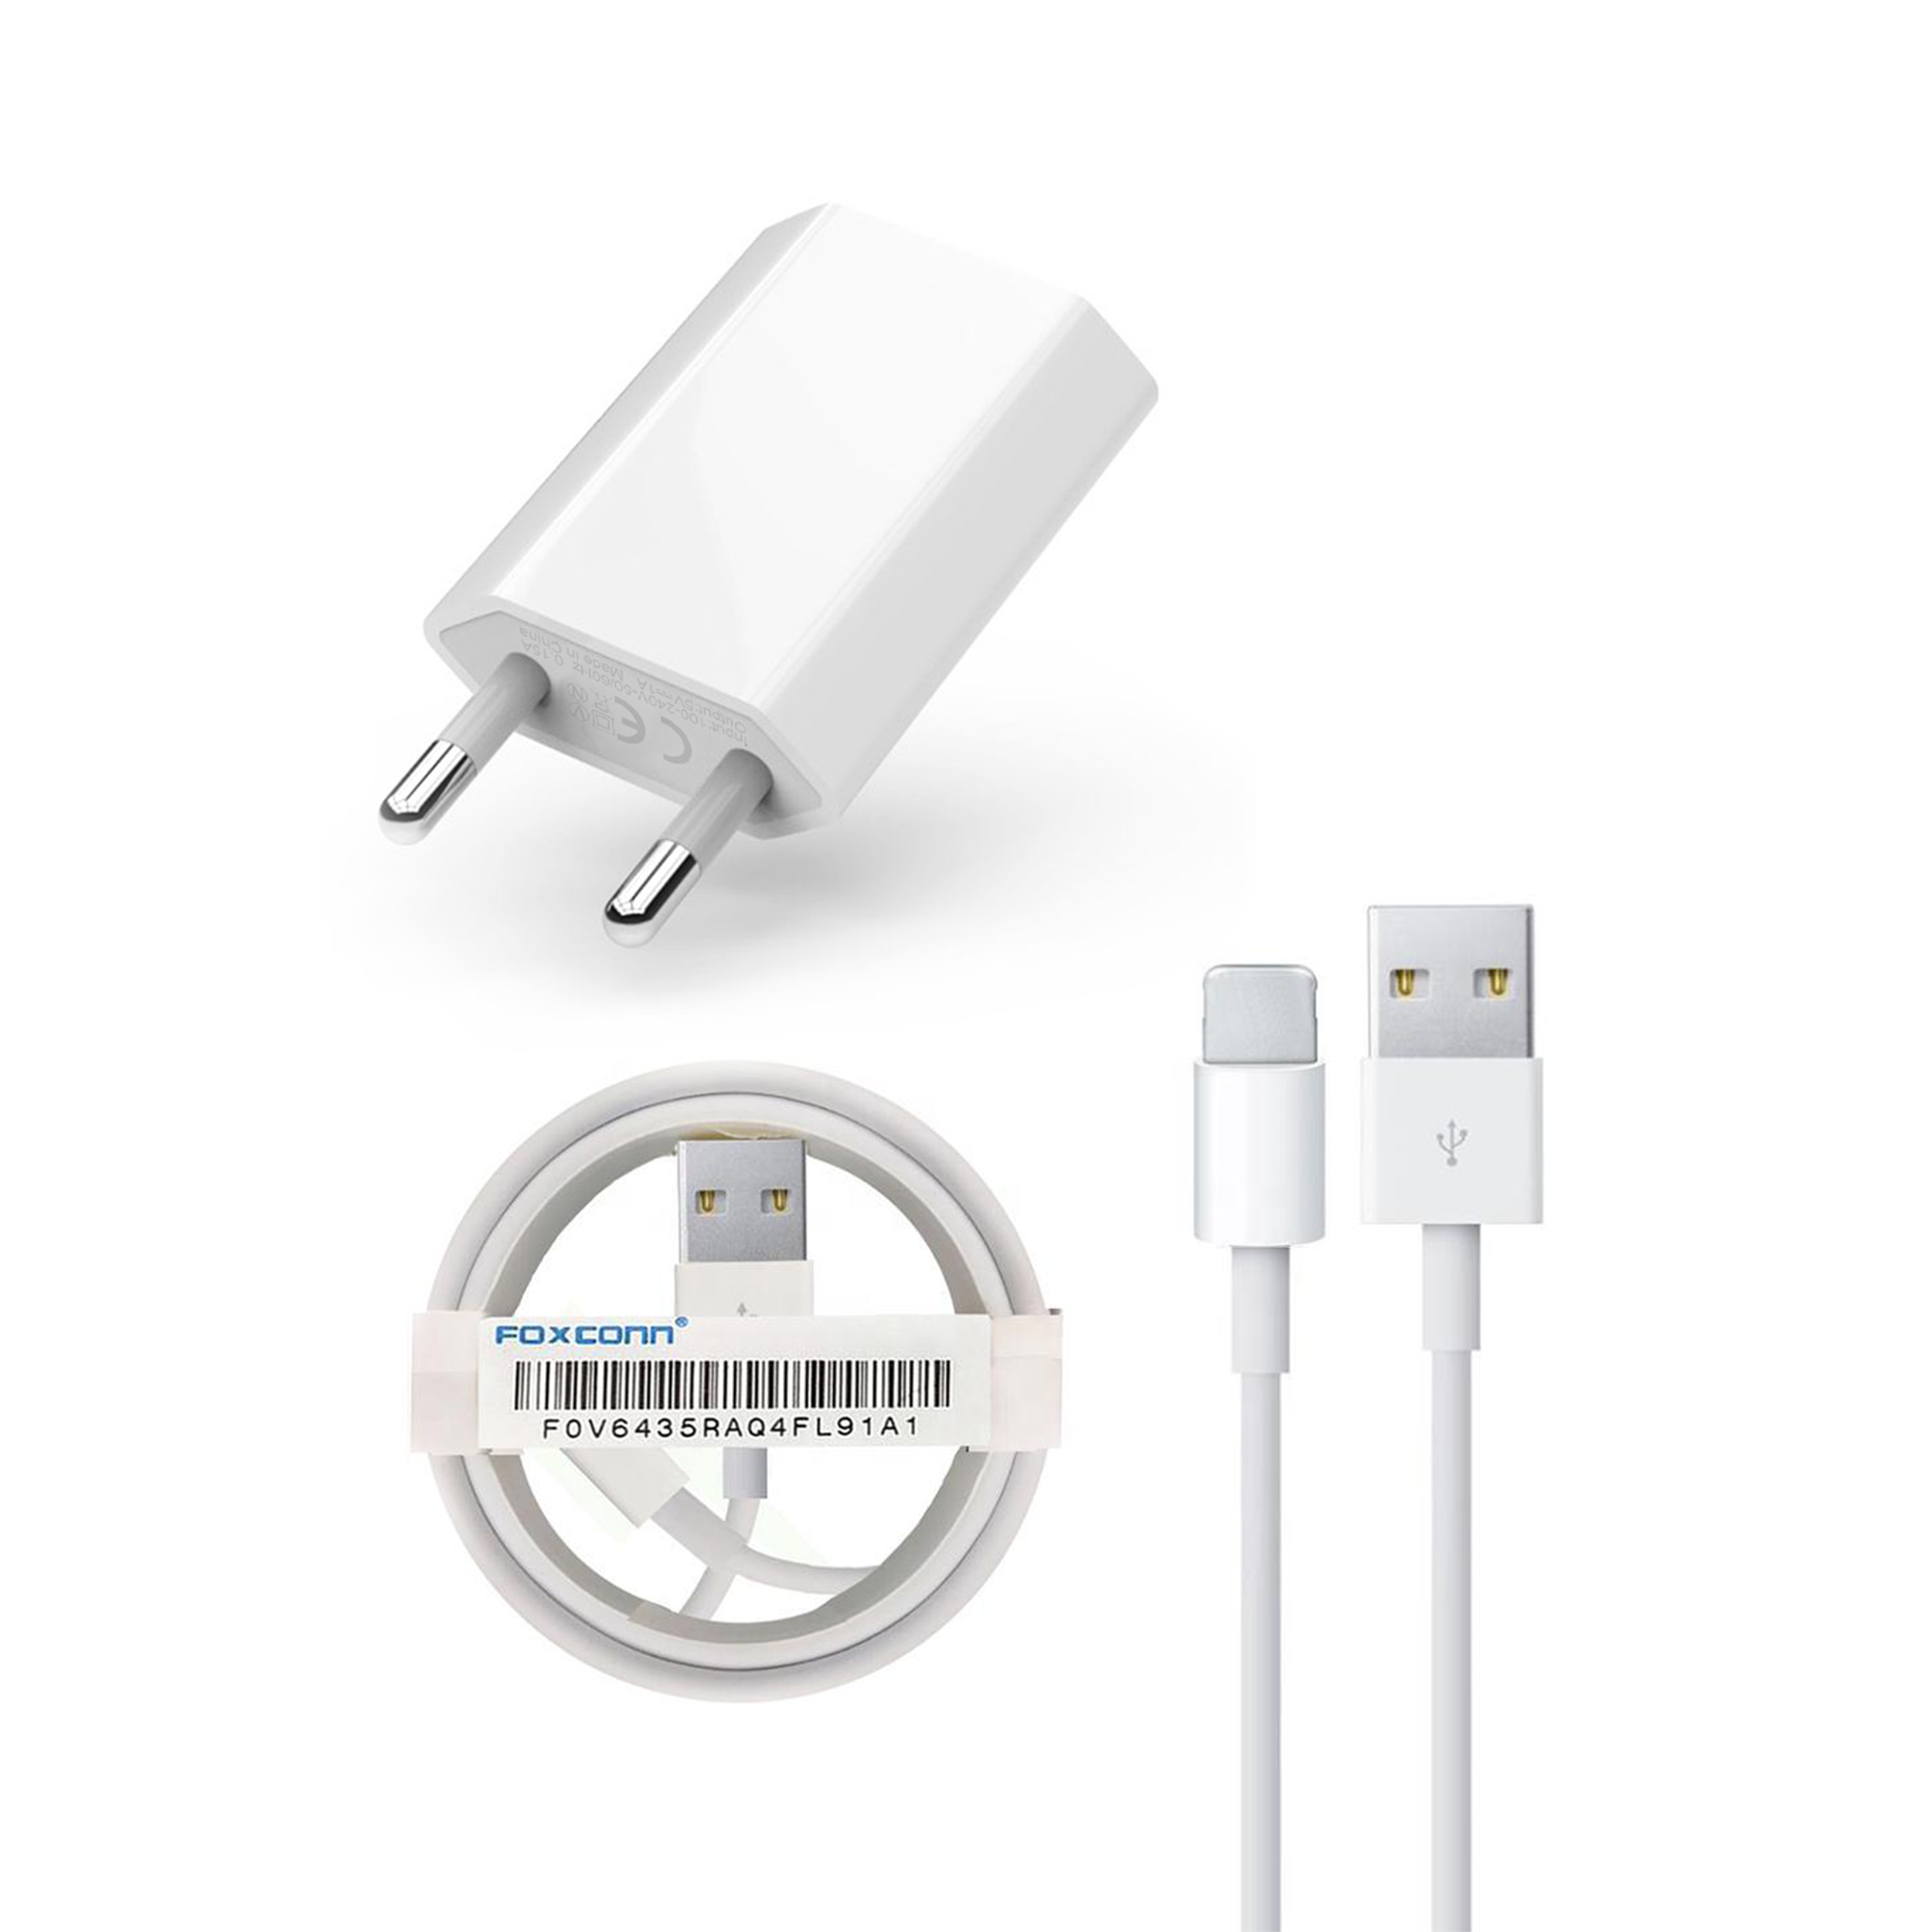 დამტენი კომპლექტი / USB Lightning Data Cable+Wall Charger